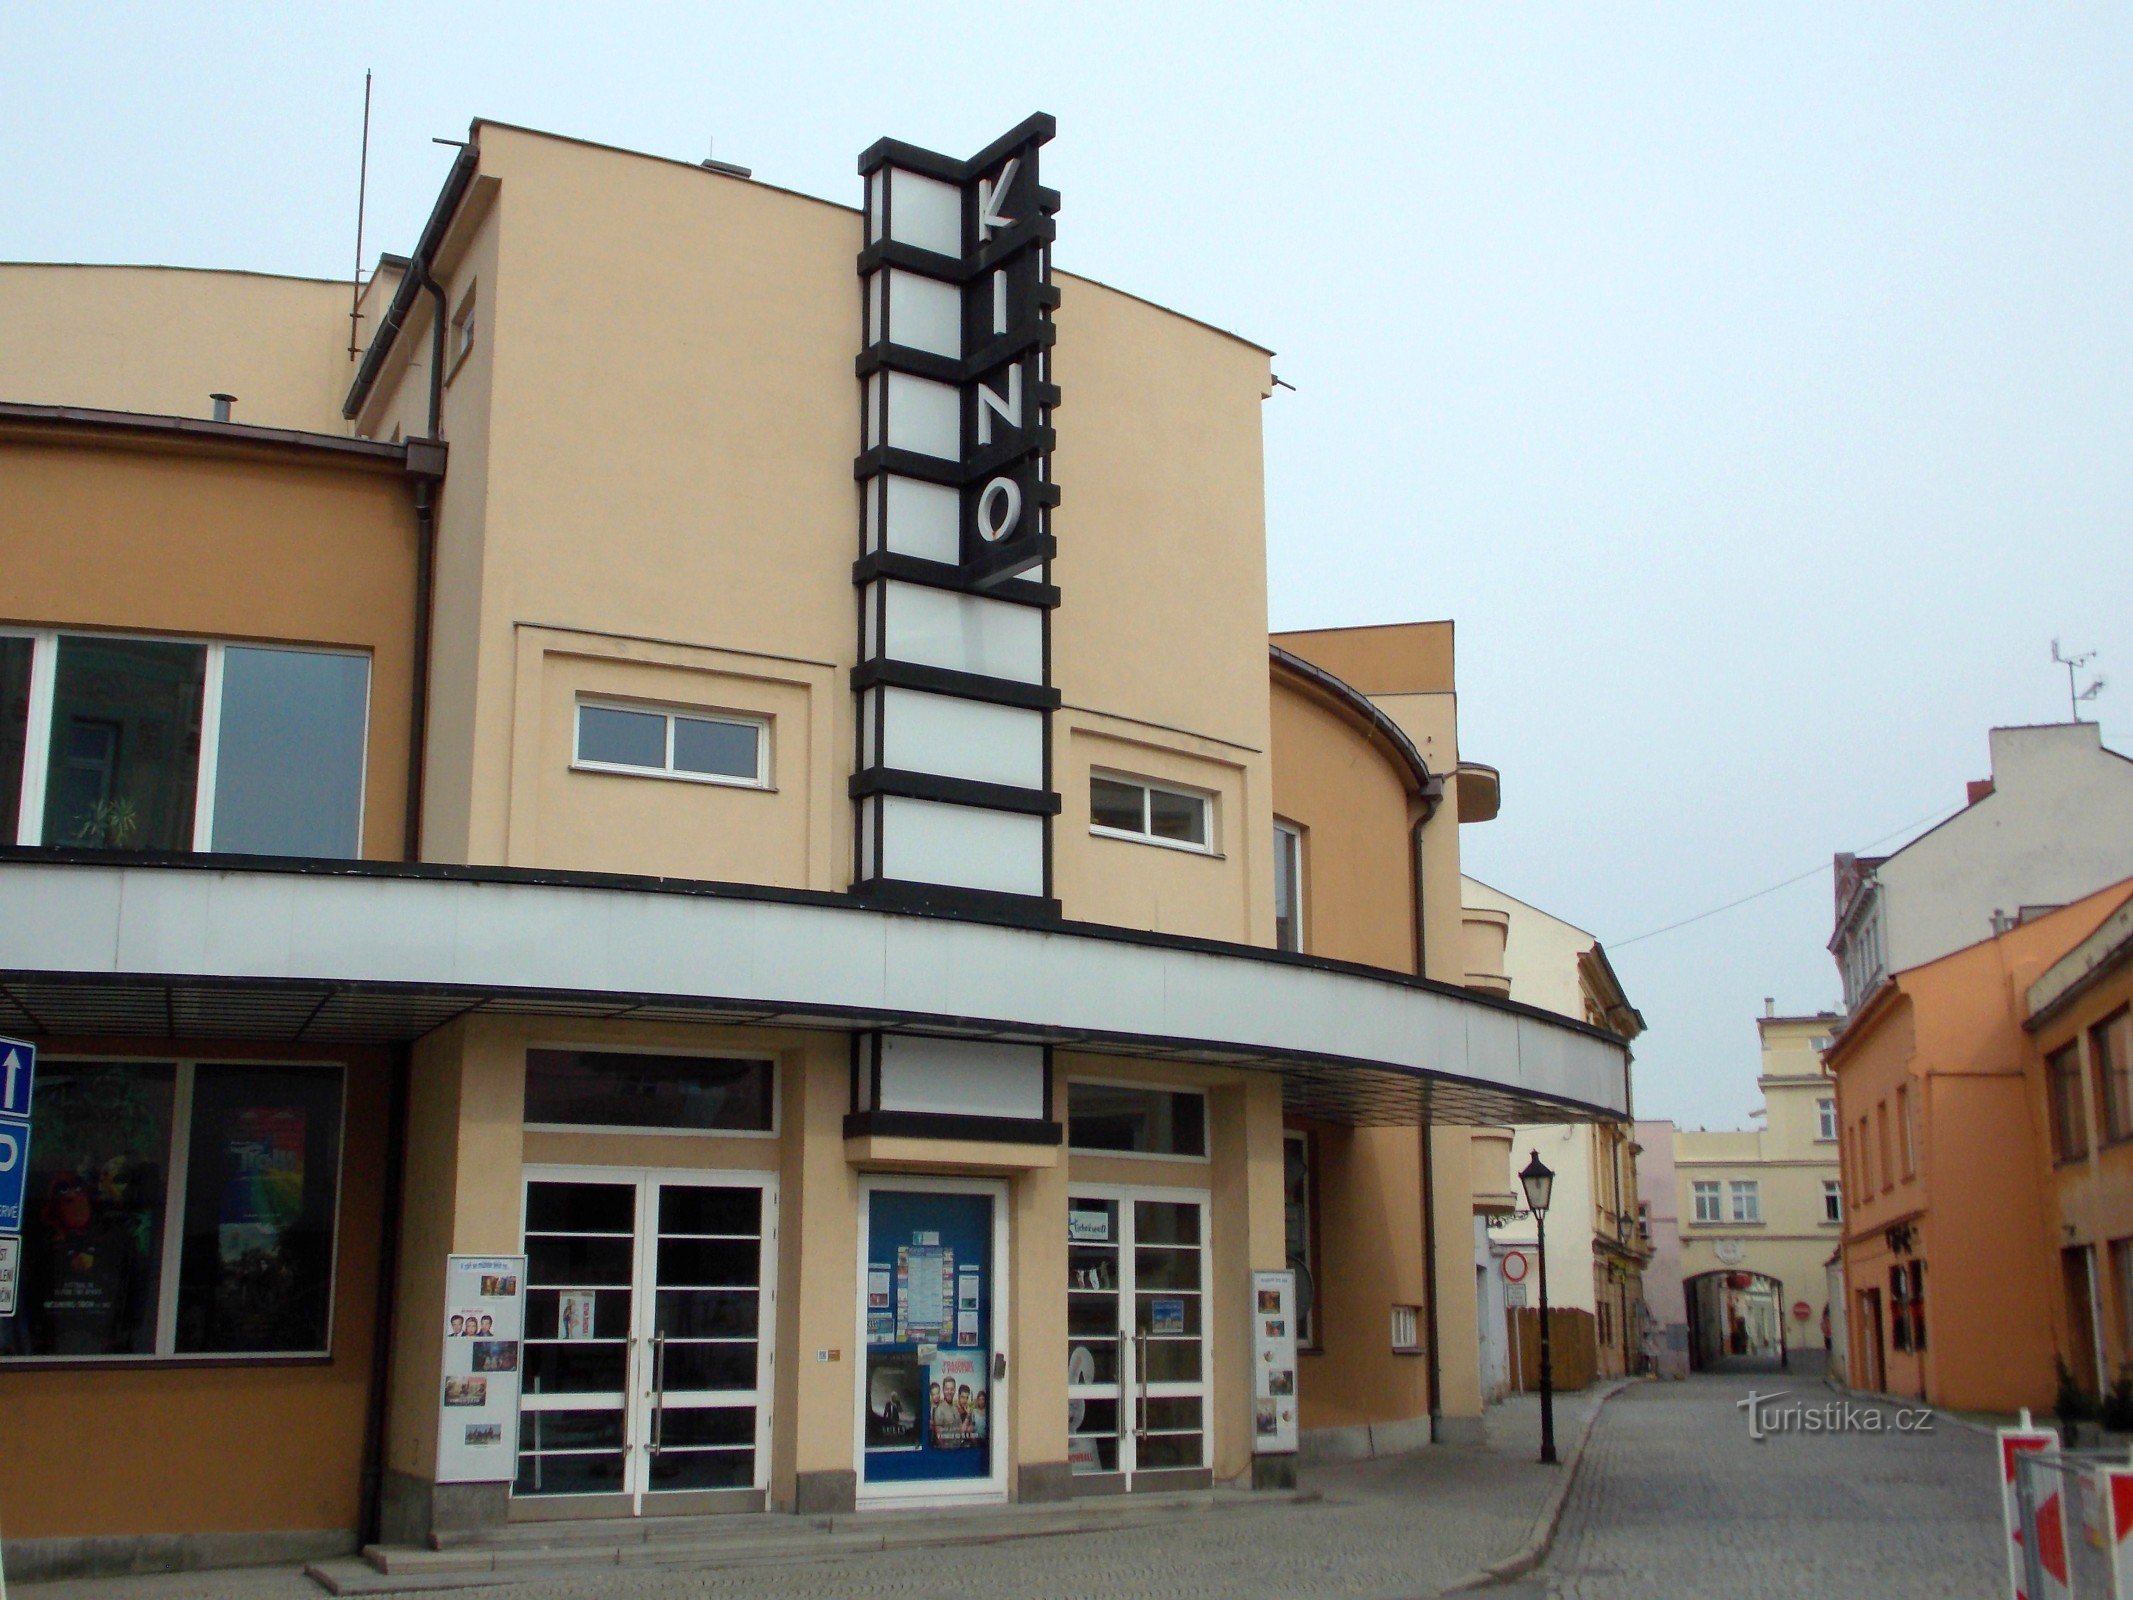 Cinema Květen in Nové Jičín